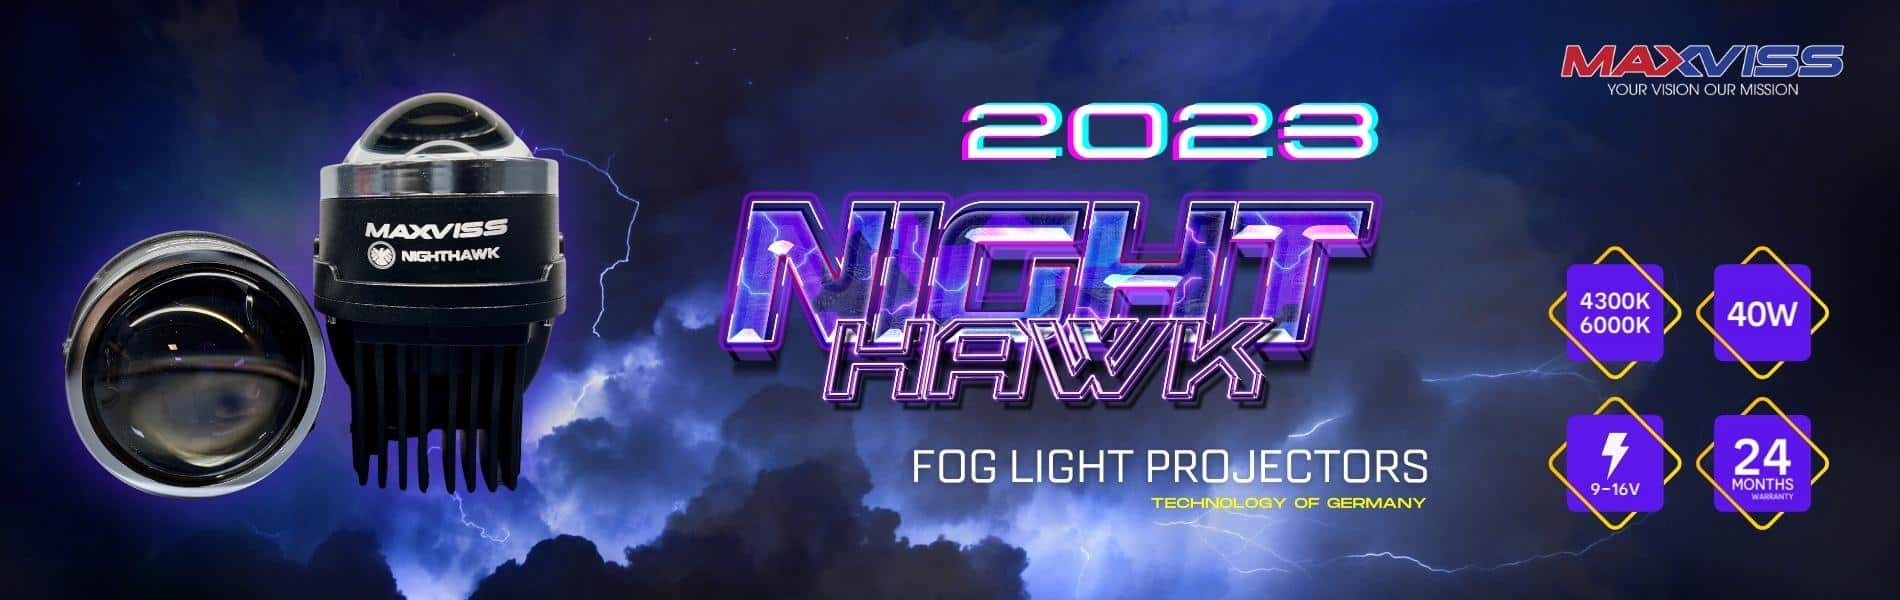 BI GẦM LED MAXVISS F1 NIGHTHAWK 2023